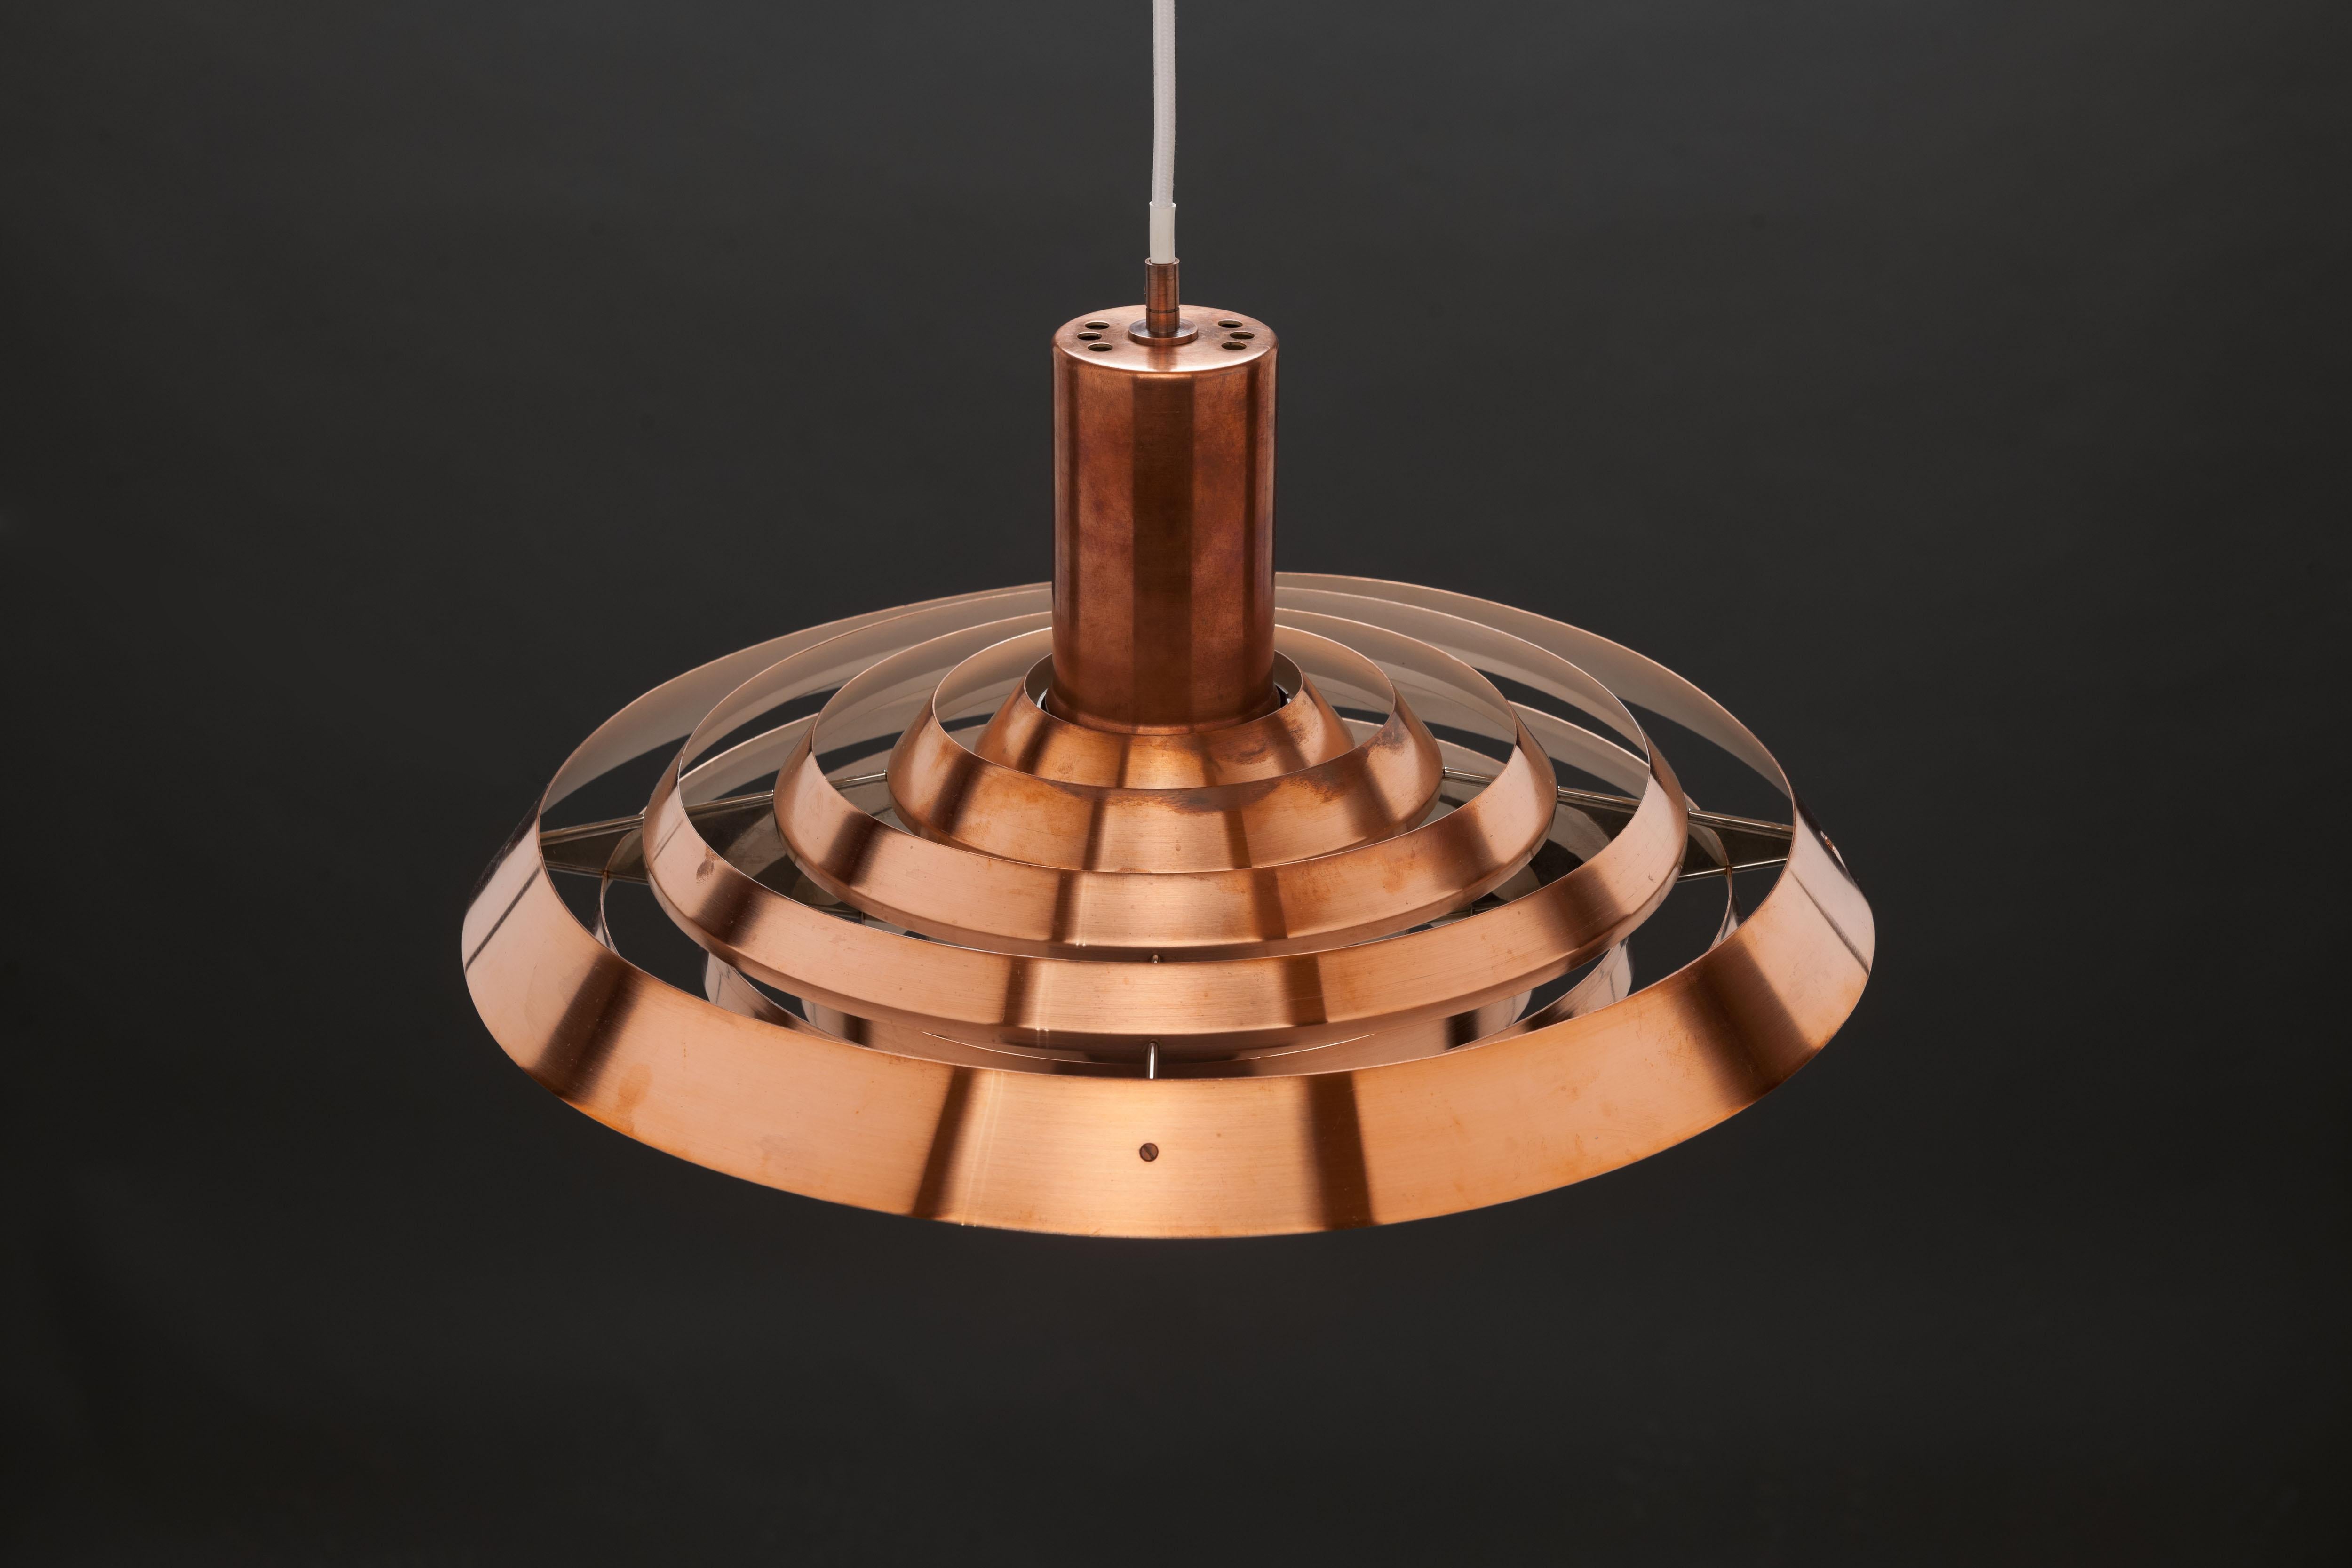 Copper Early Poul Henningsen 'Langelinie' Lamp by Louis Poulsen